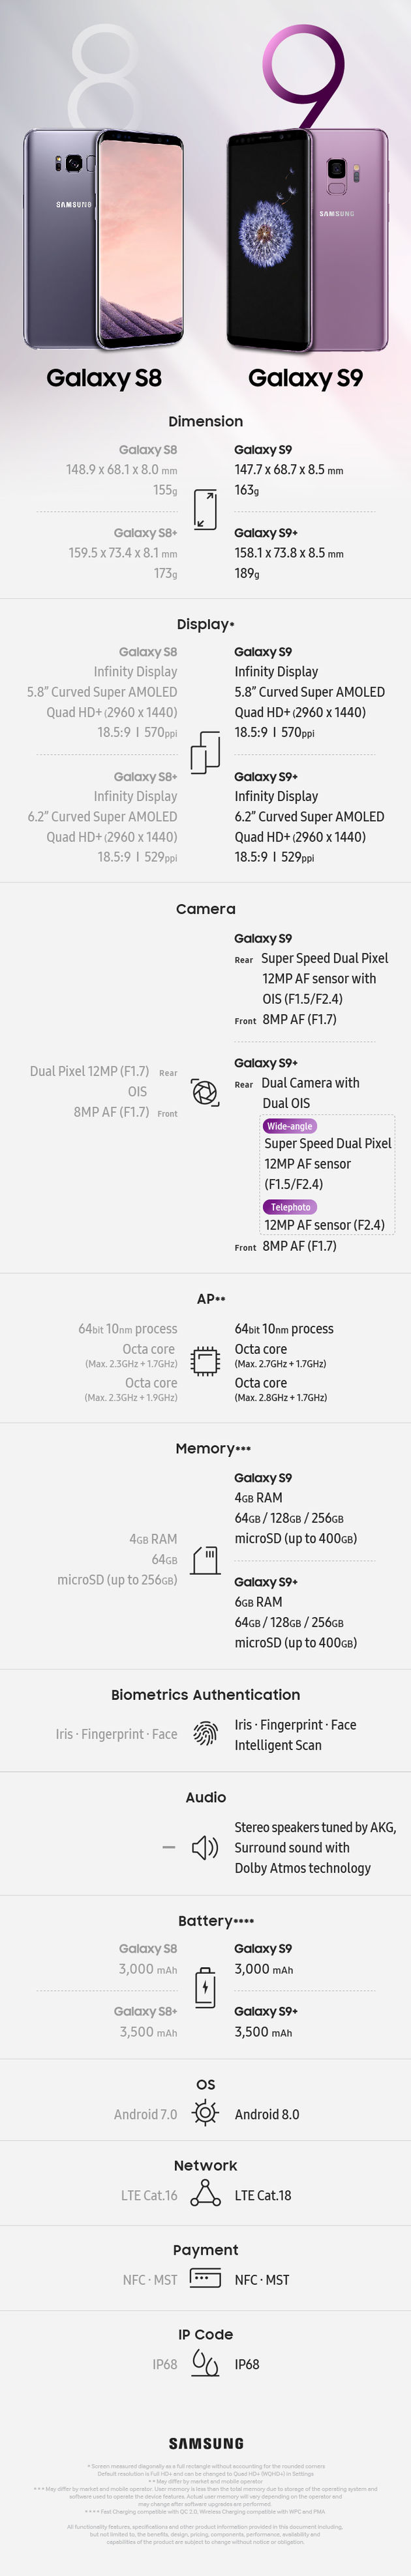 Infographic-Galaxy-S9-S9-Spec-Comparison_main_1